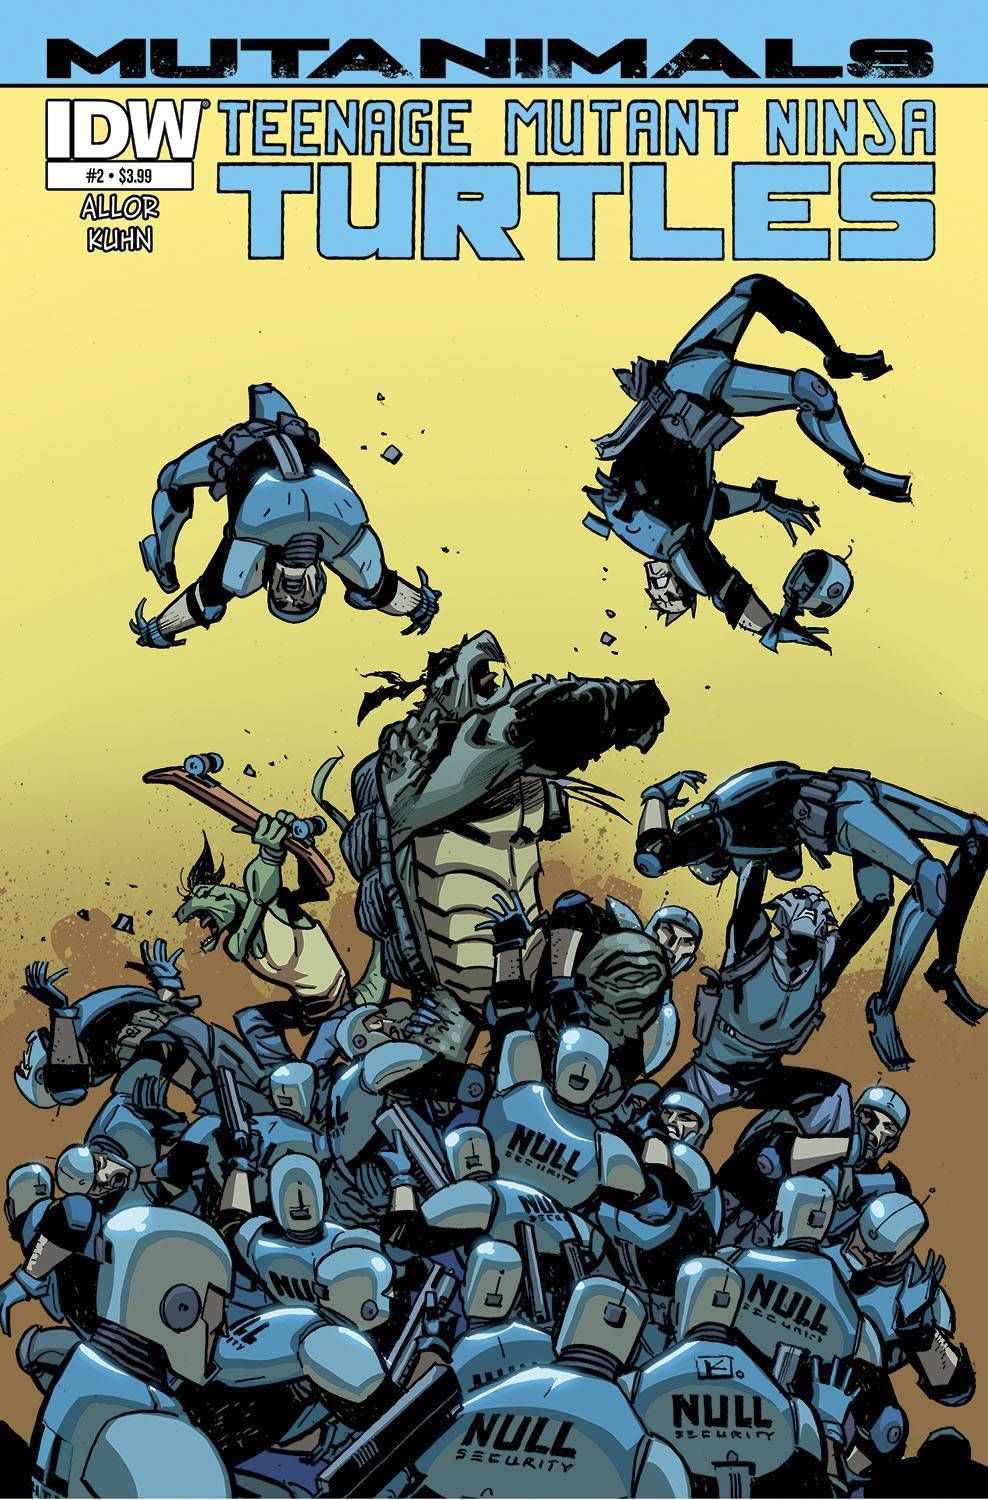 Teenage Mutant Ninja Turtles: Mutanimals #2 Comic